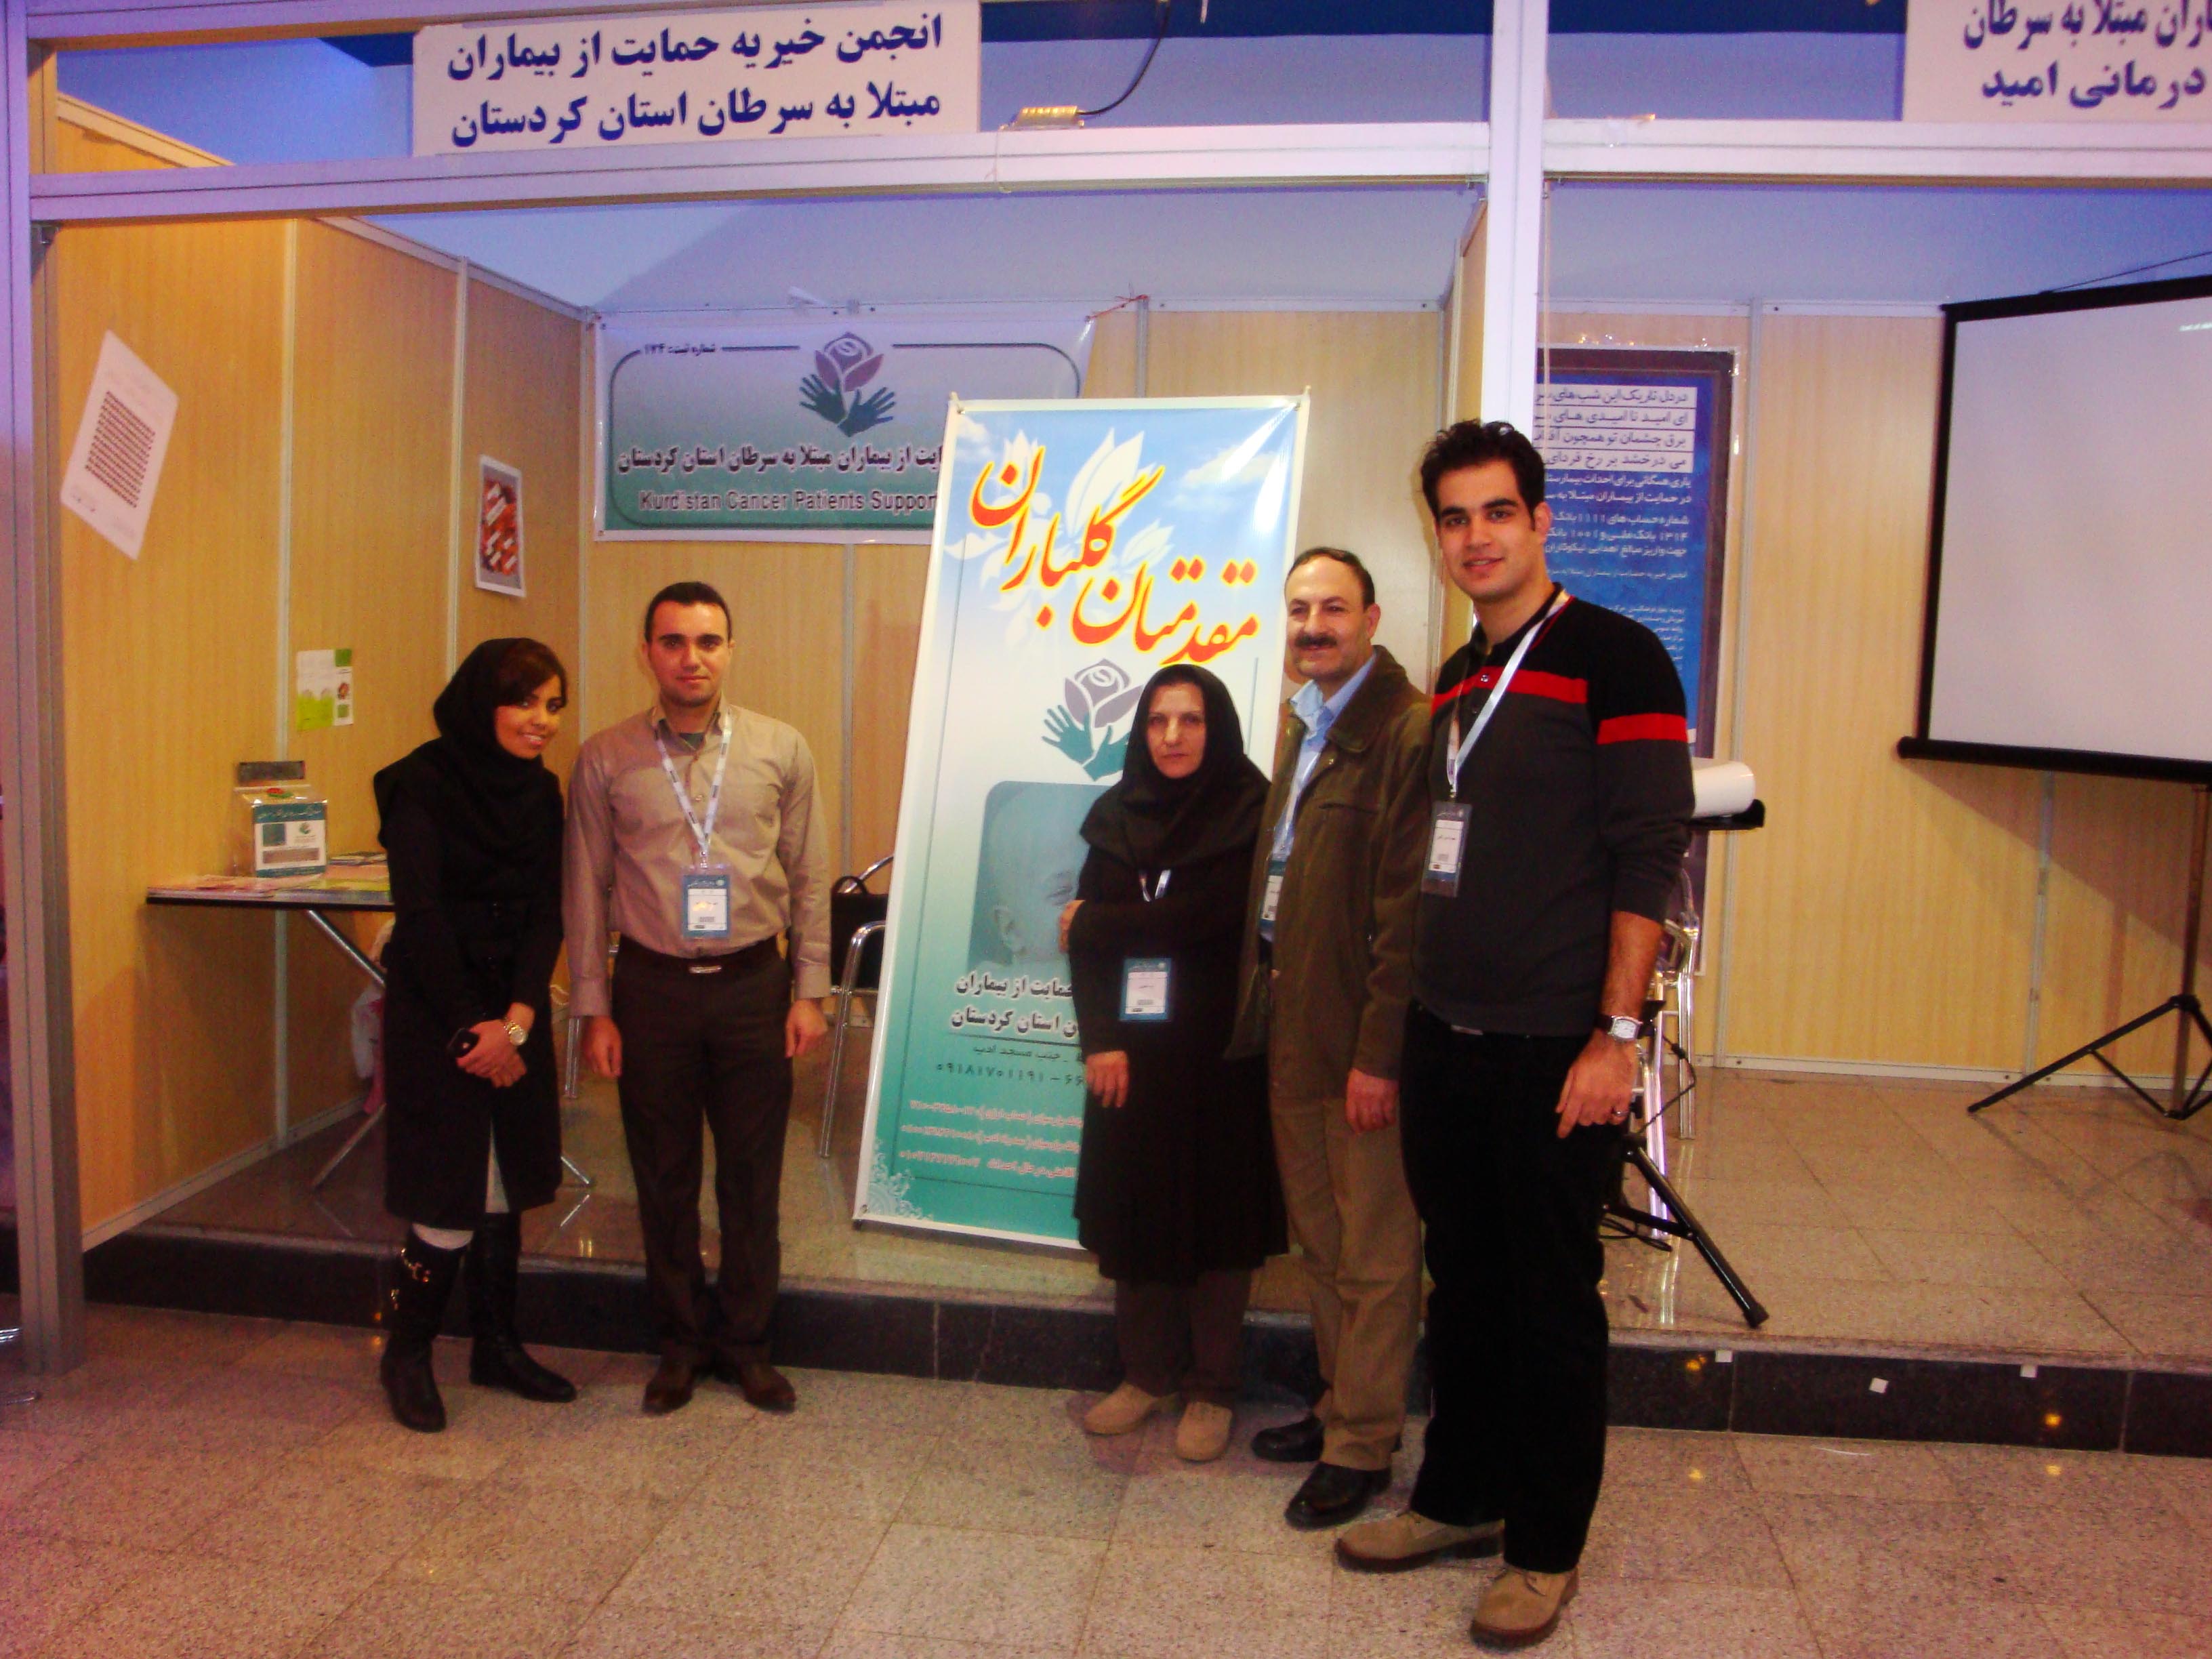 حضور انجمن در همایش سرطان و پیشگیری از ان در تهران